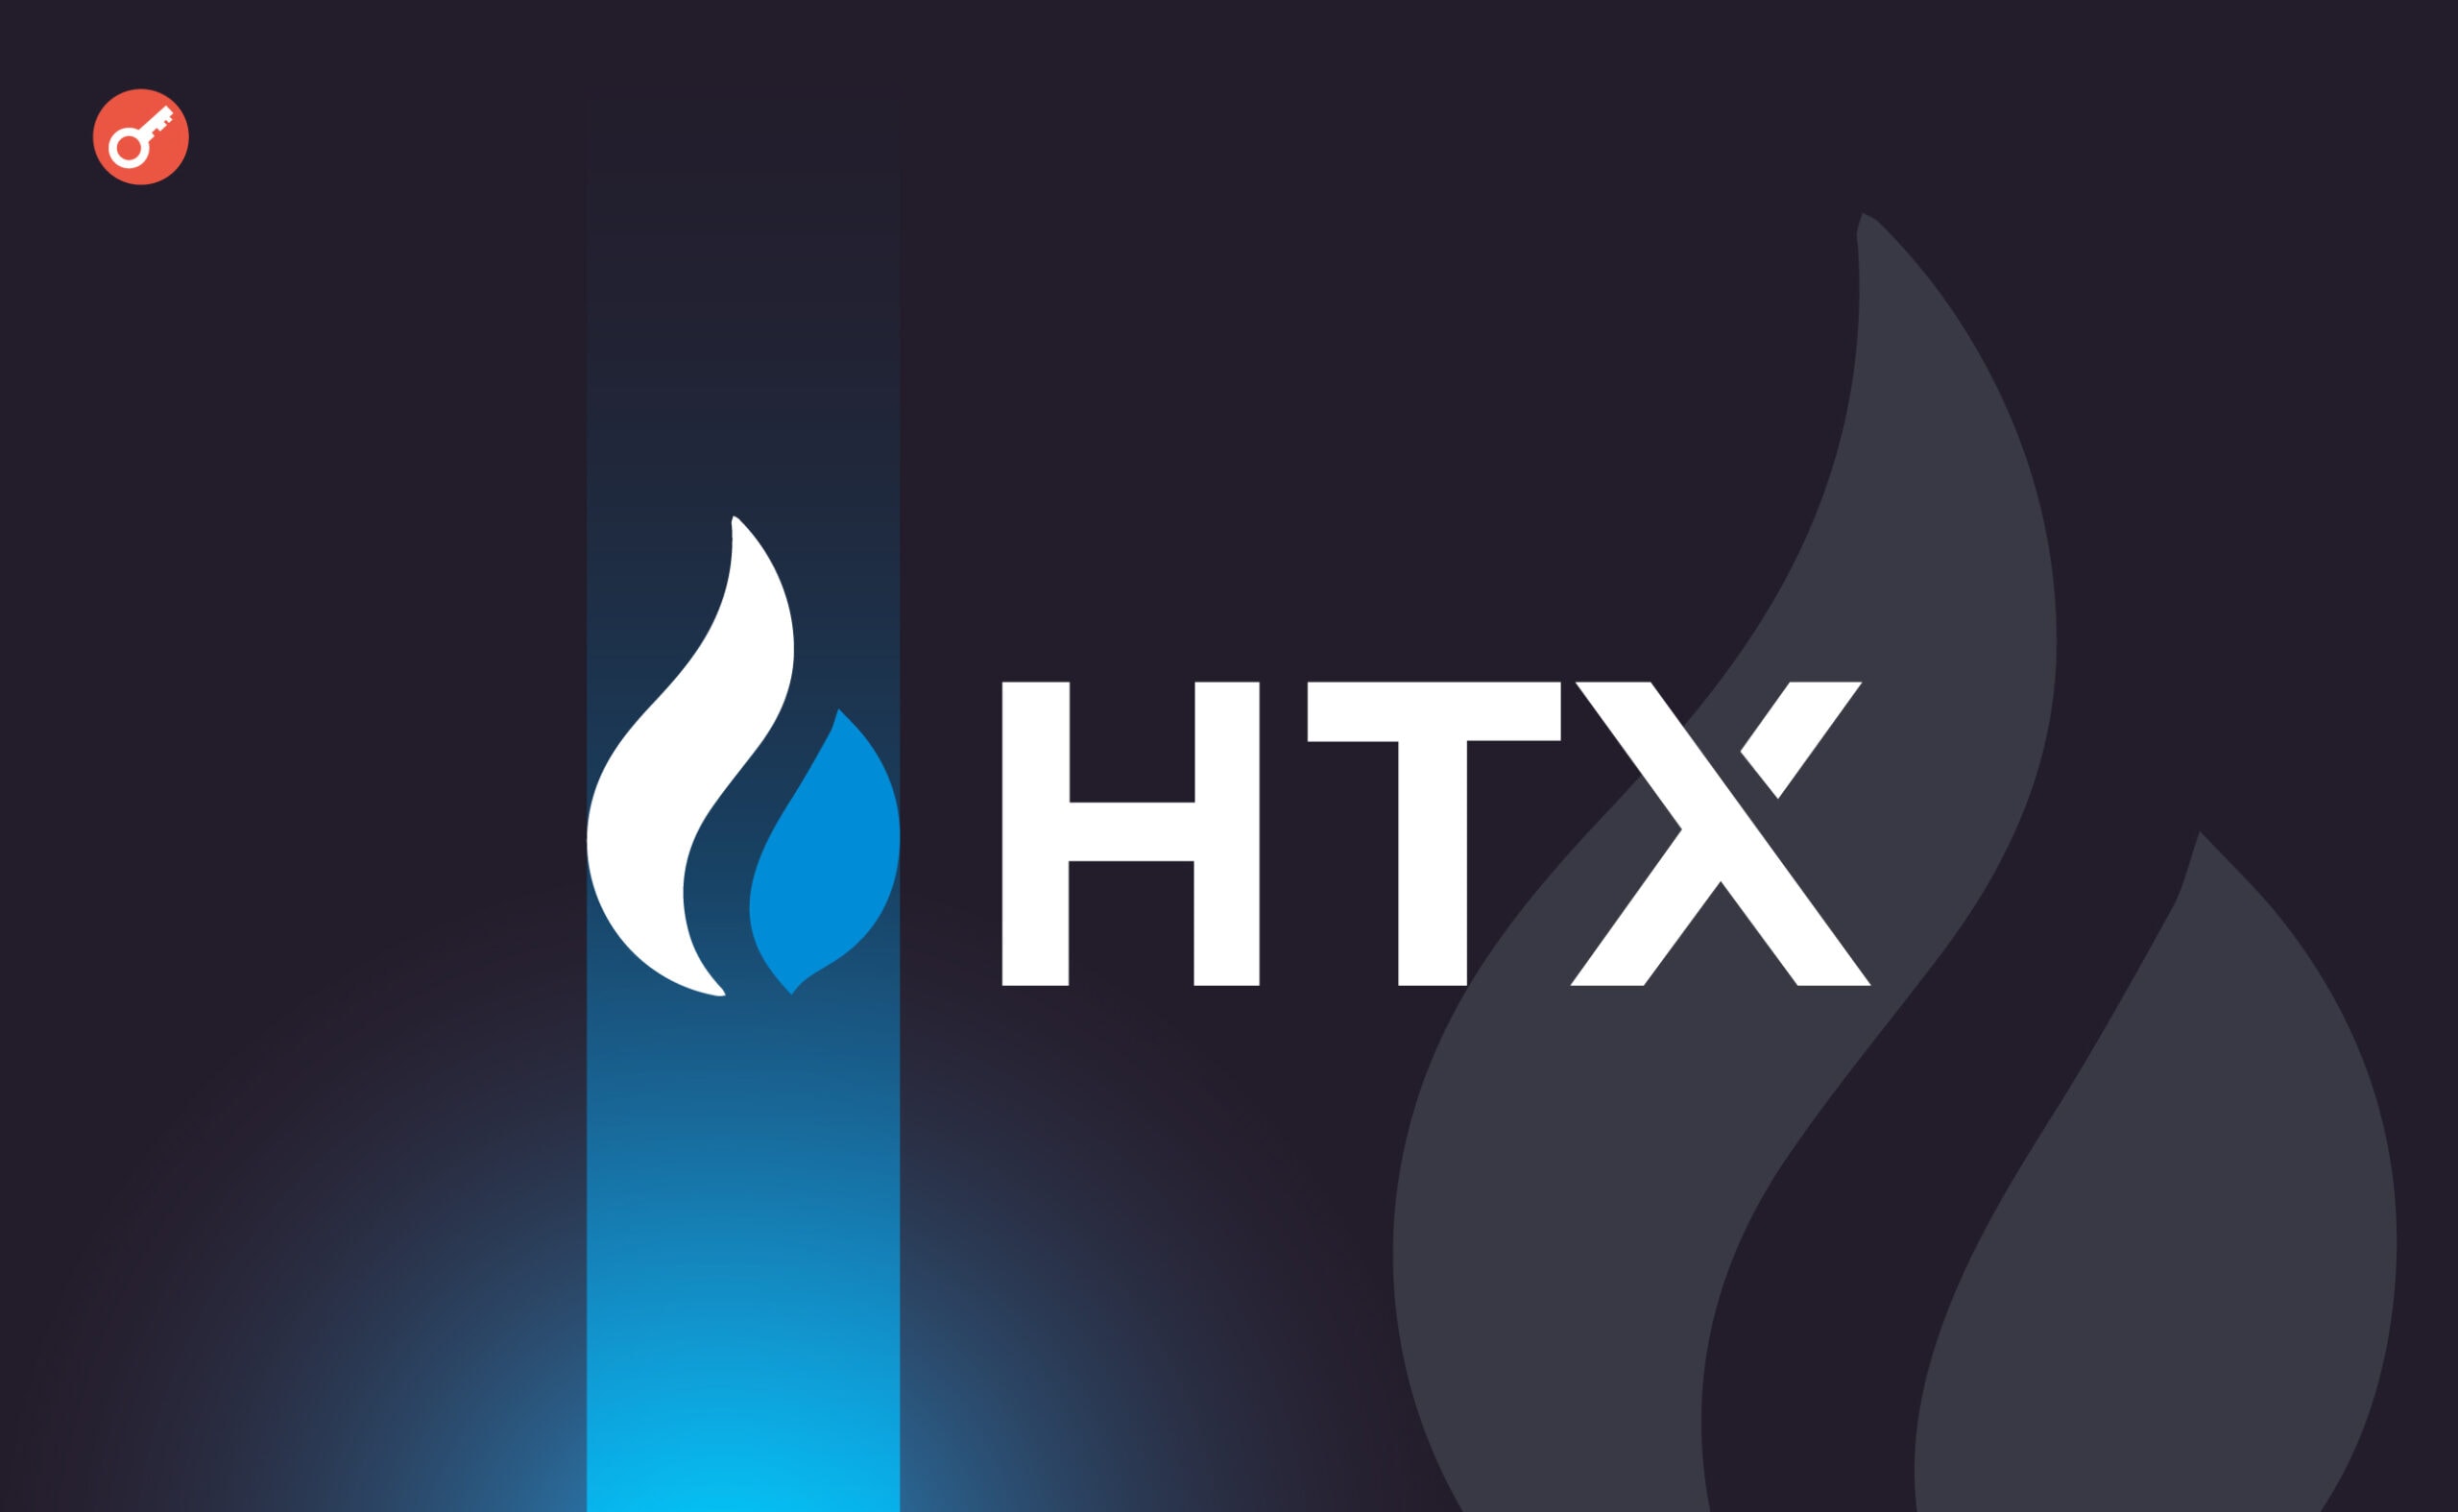 HTX відкликала заявку на отримання ліцензії в Гонконзі. Головний колаж новини.